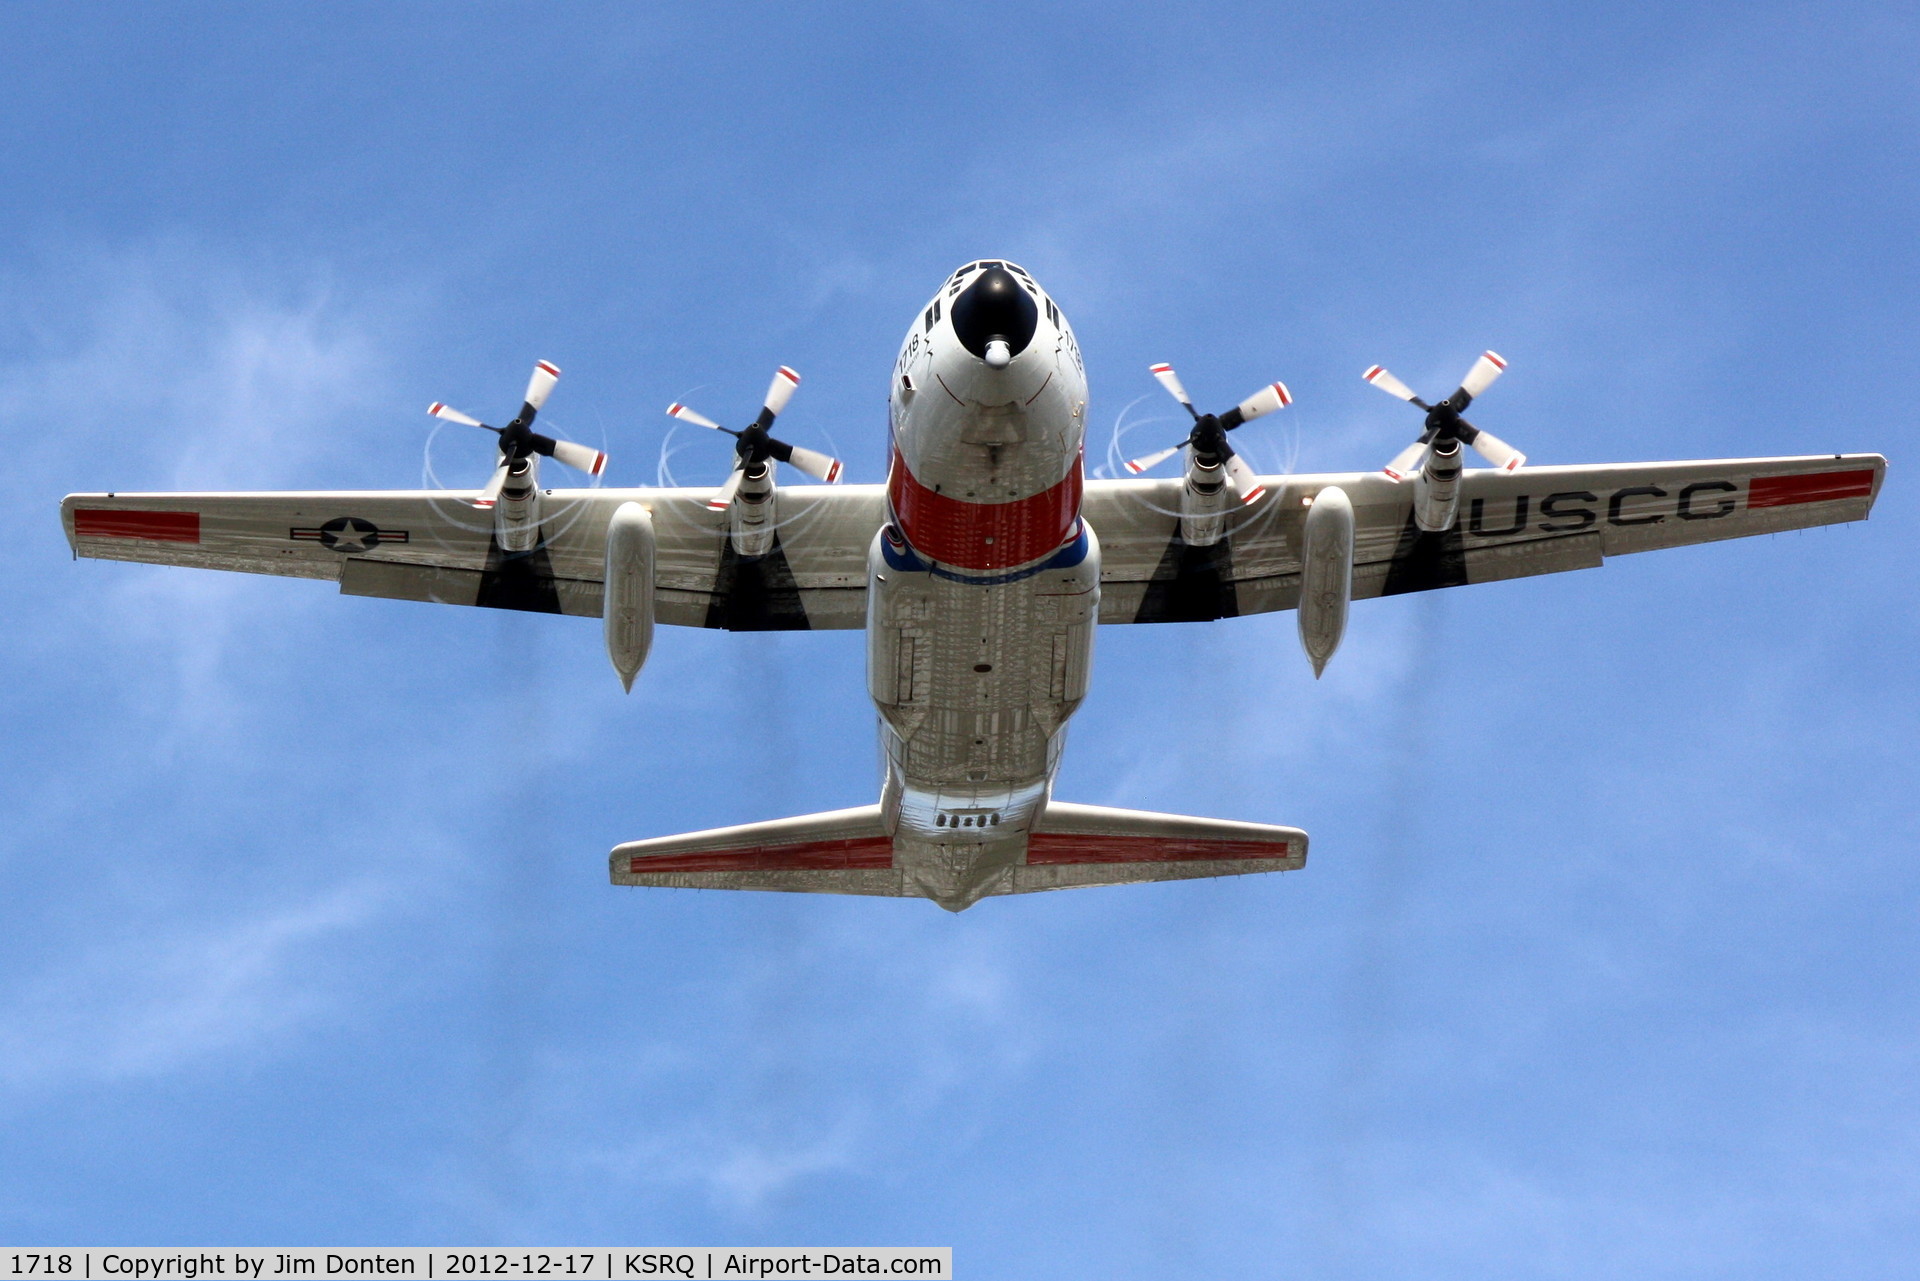 1718, 1986 Lockheed C-130H Hercules C/N 382-5106, USCG Clearwater 1718 departs Sarasota-Bradenton International Airport